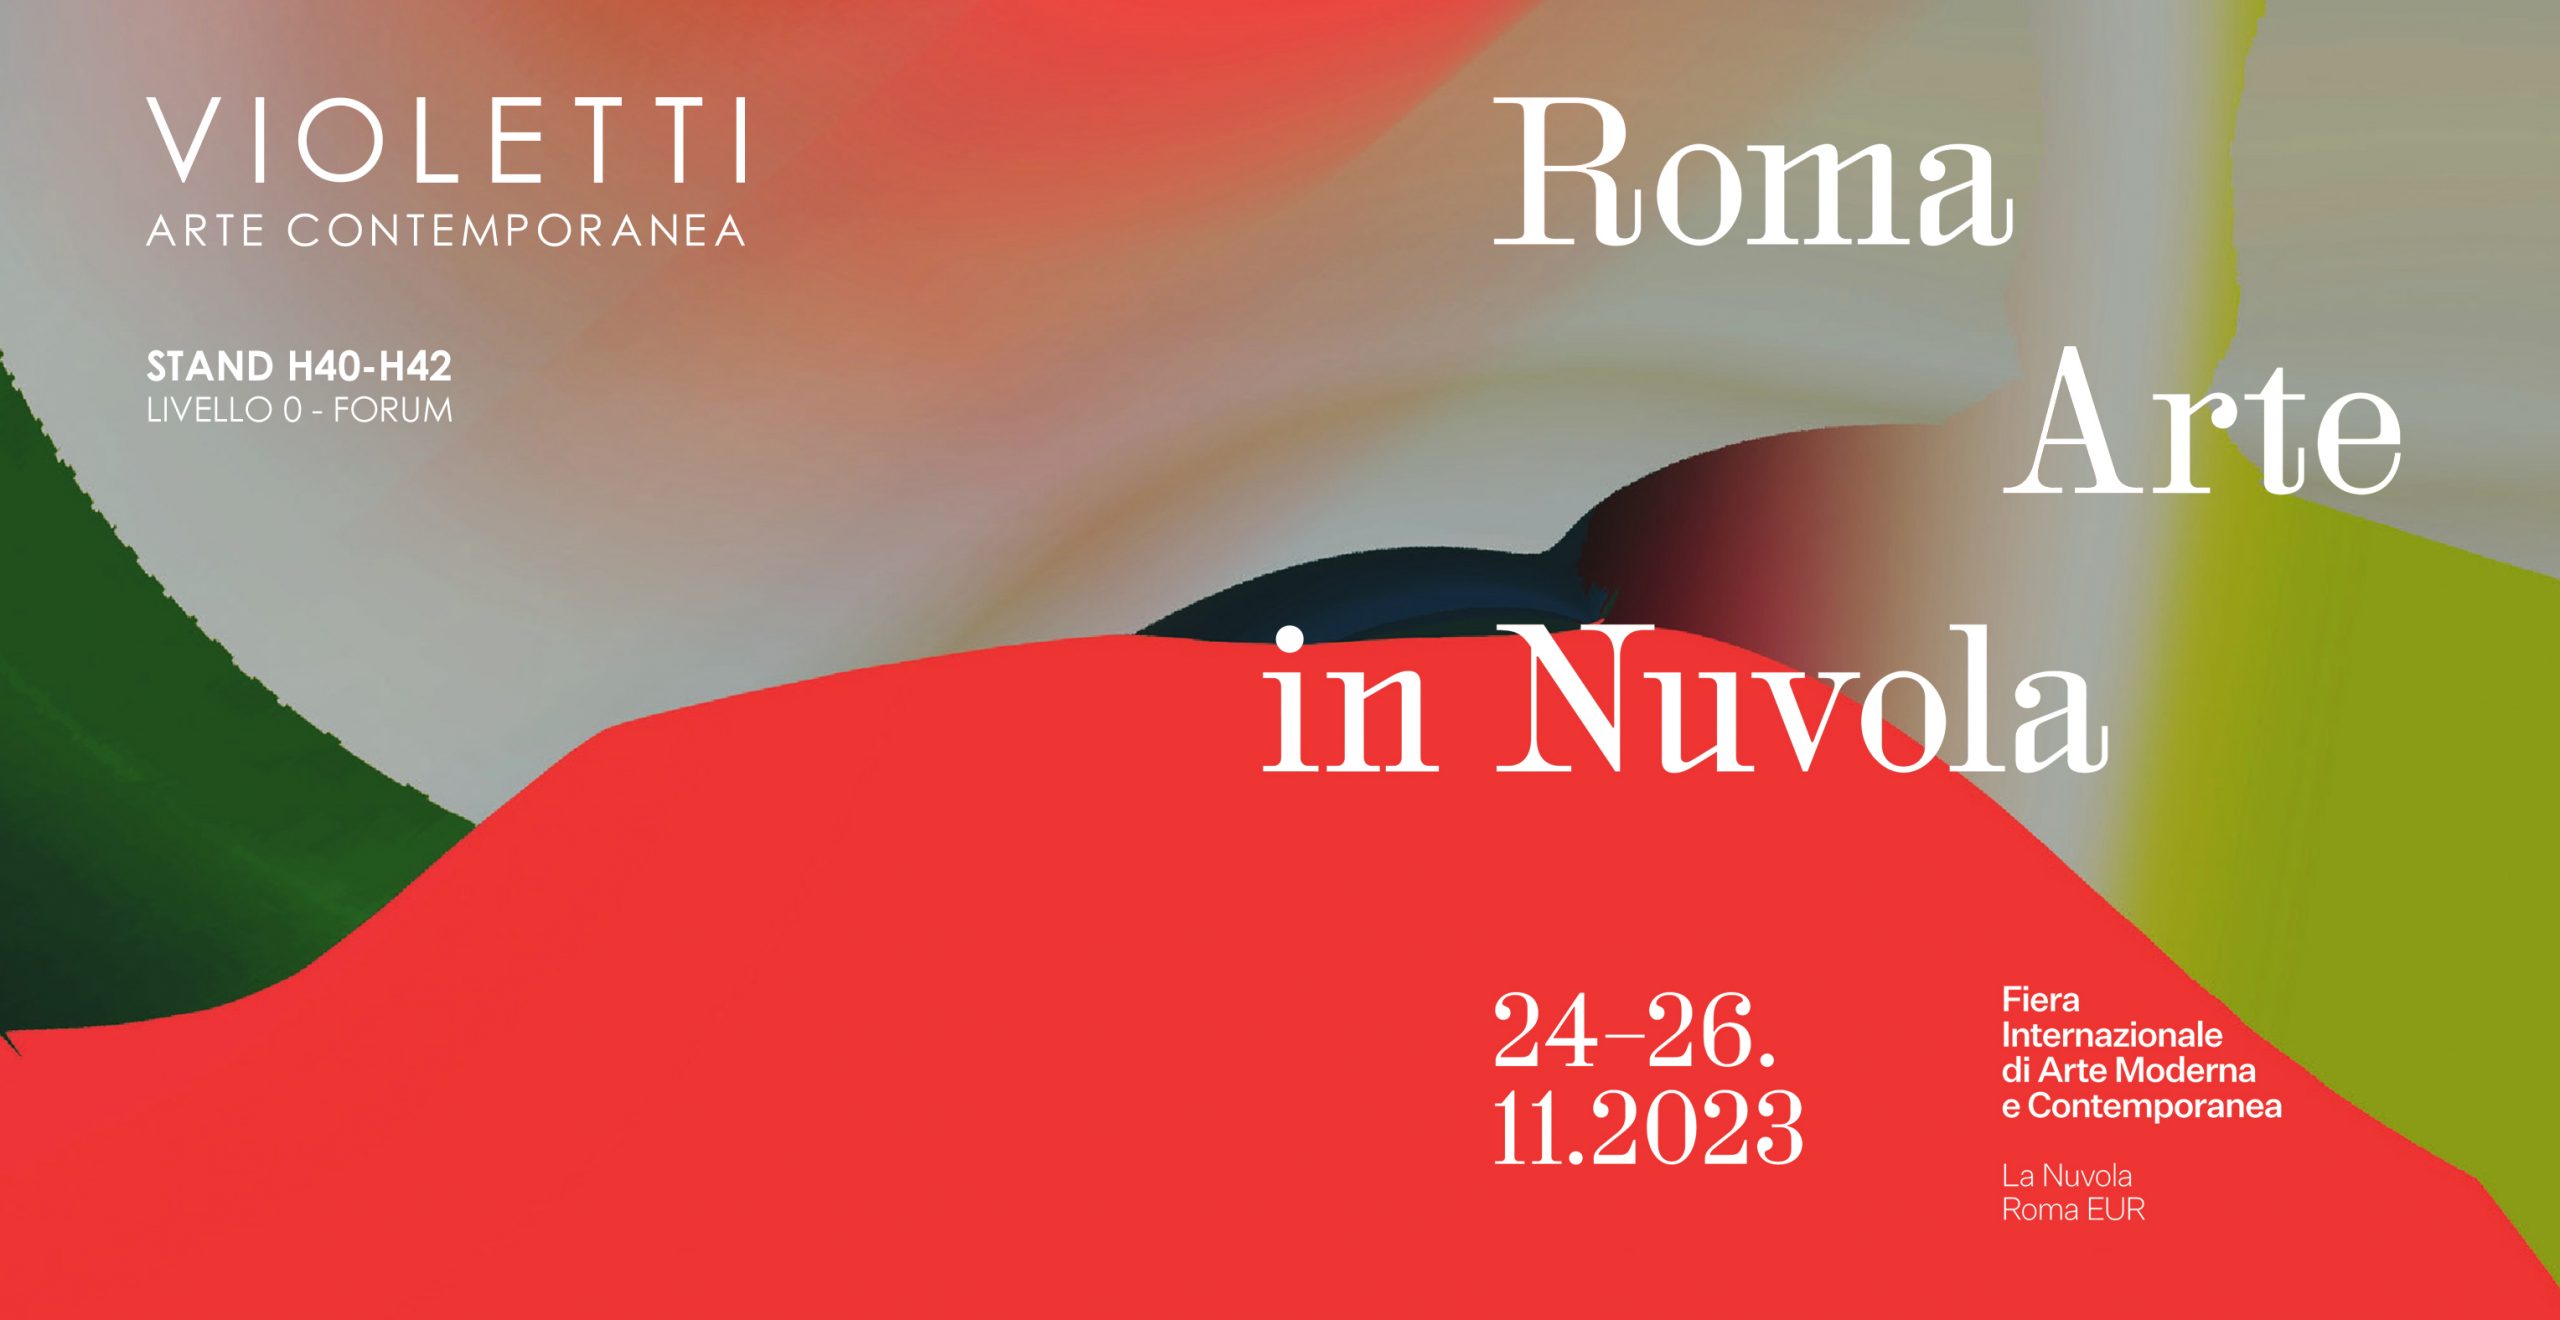 Violetti Arte Contemporanea | Roma Arte in Nuvola 2023